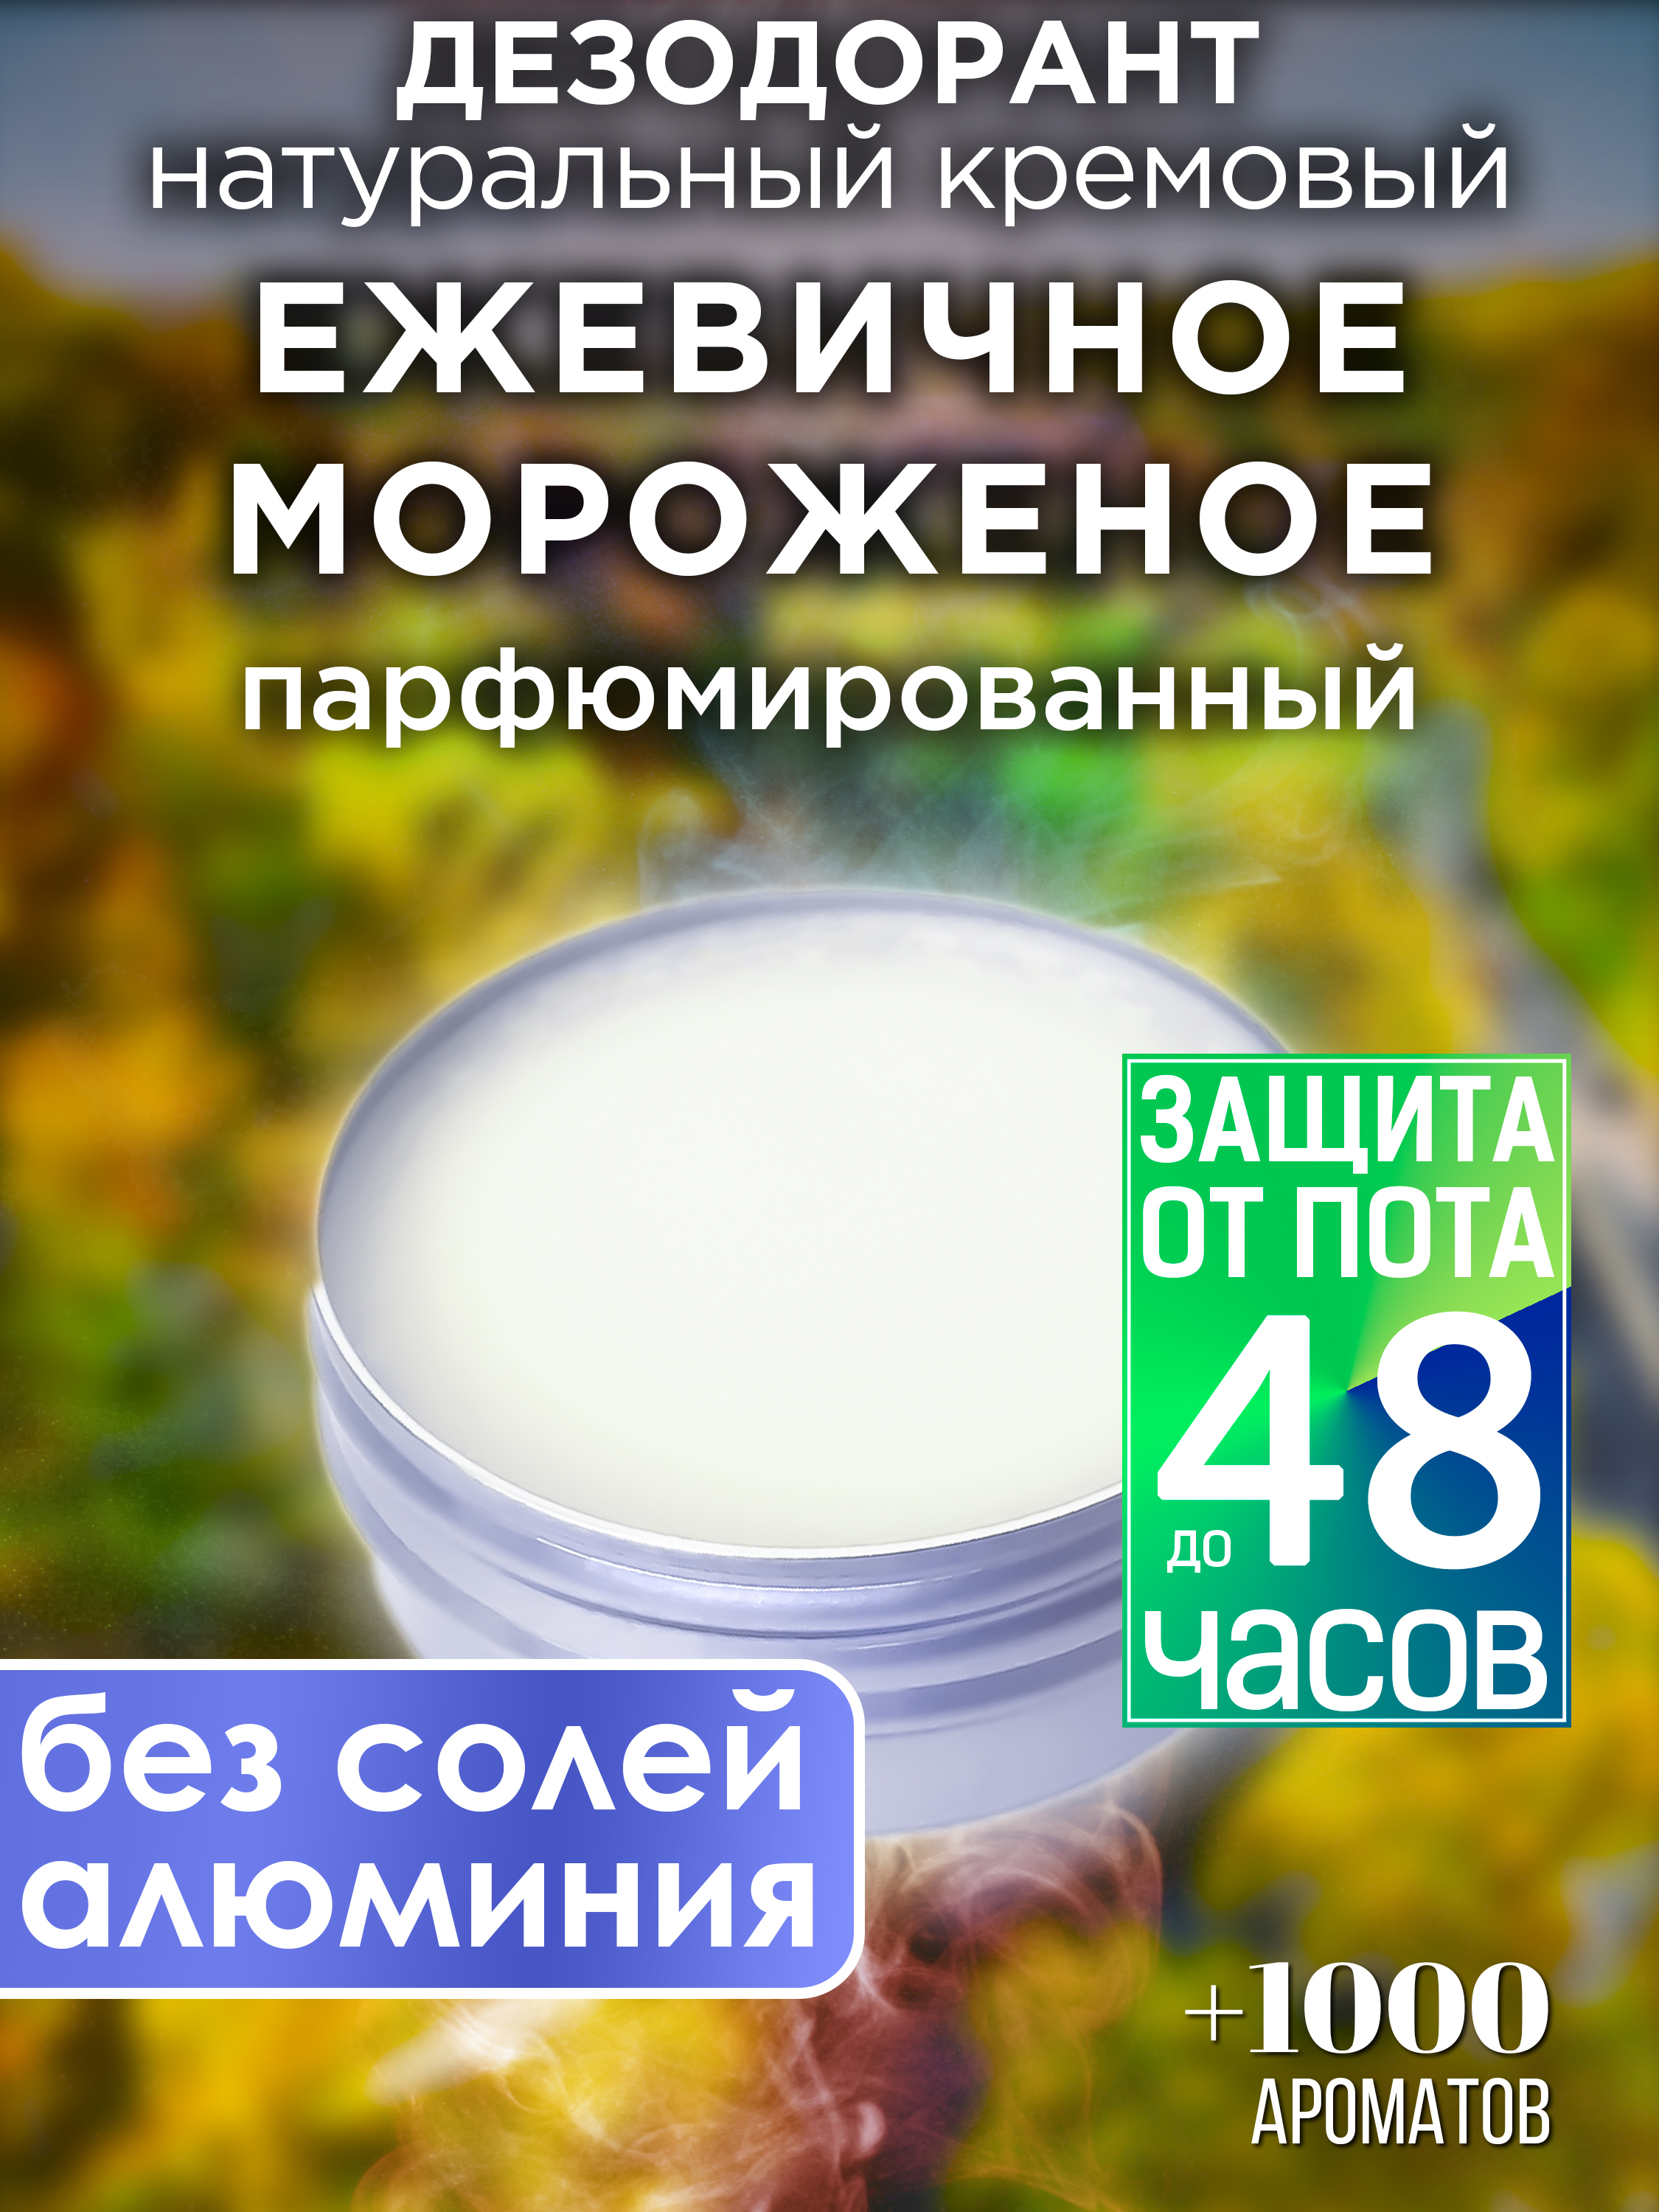 Натуральный кремовый дезодорант Аурасо Ежевичное мороженое парфюмированный унисекс